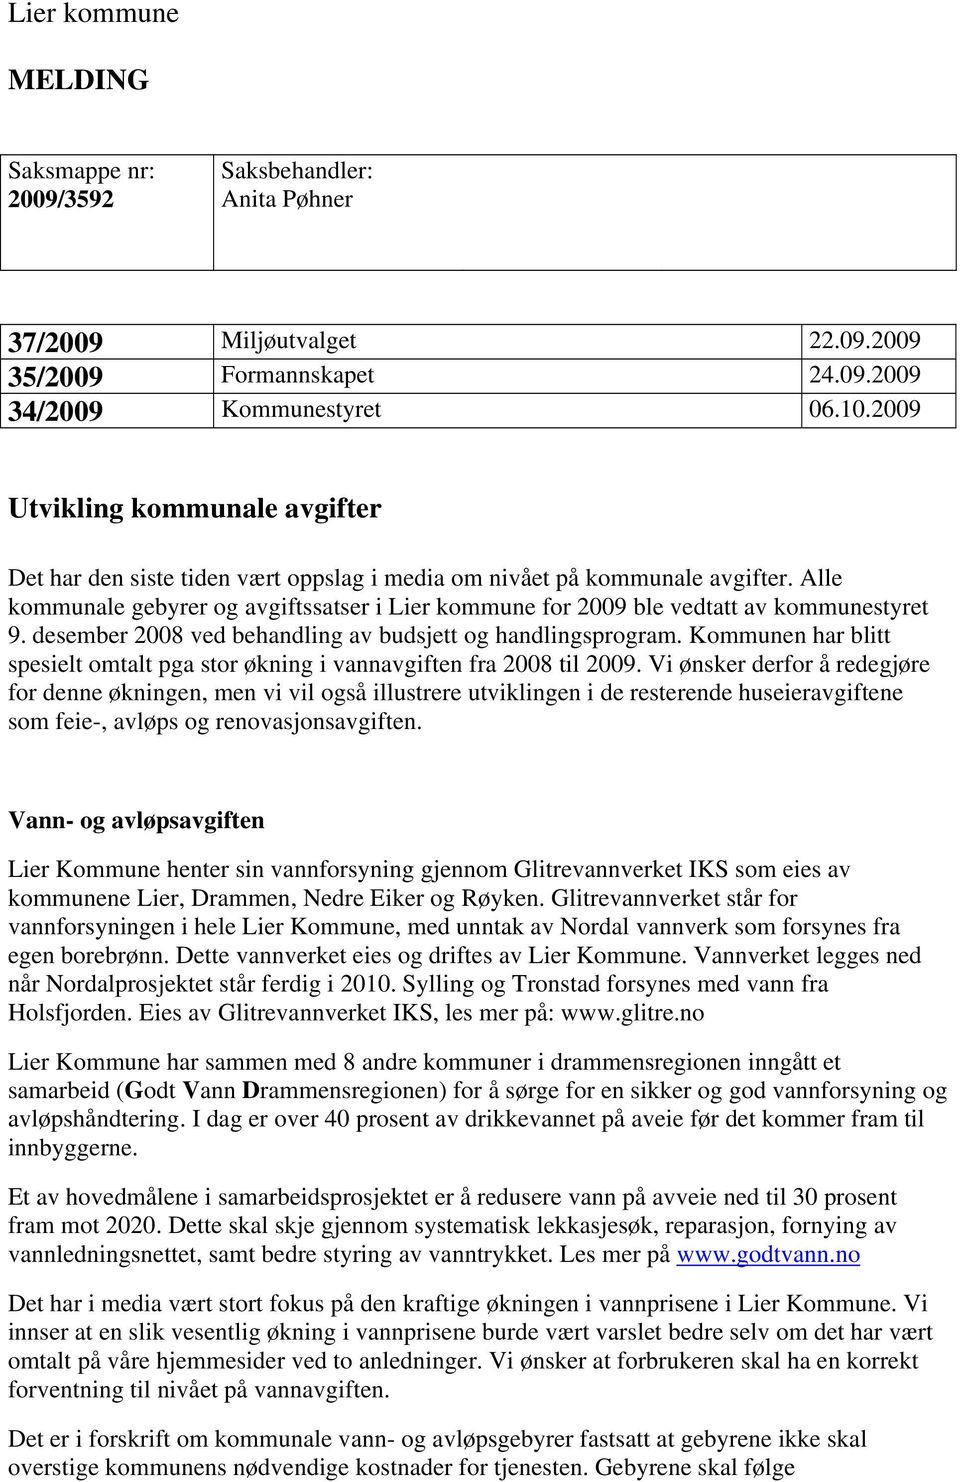 Alle kommunale gebyrer og avgiftssatser i Lier kommune for 2009 ble vedtatt av kommunestyret 9. desember 2008 ved behandling av budsjett og handlingsprogram.